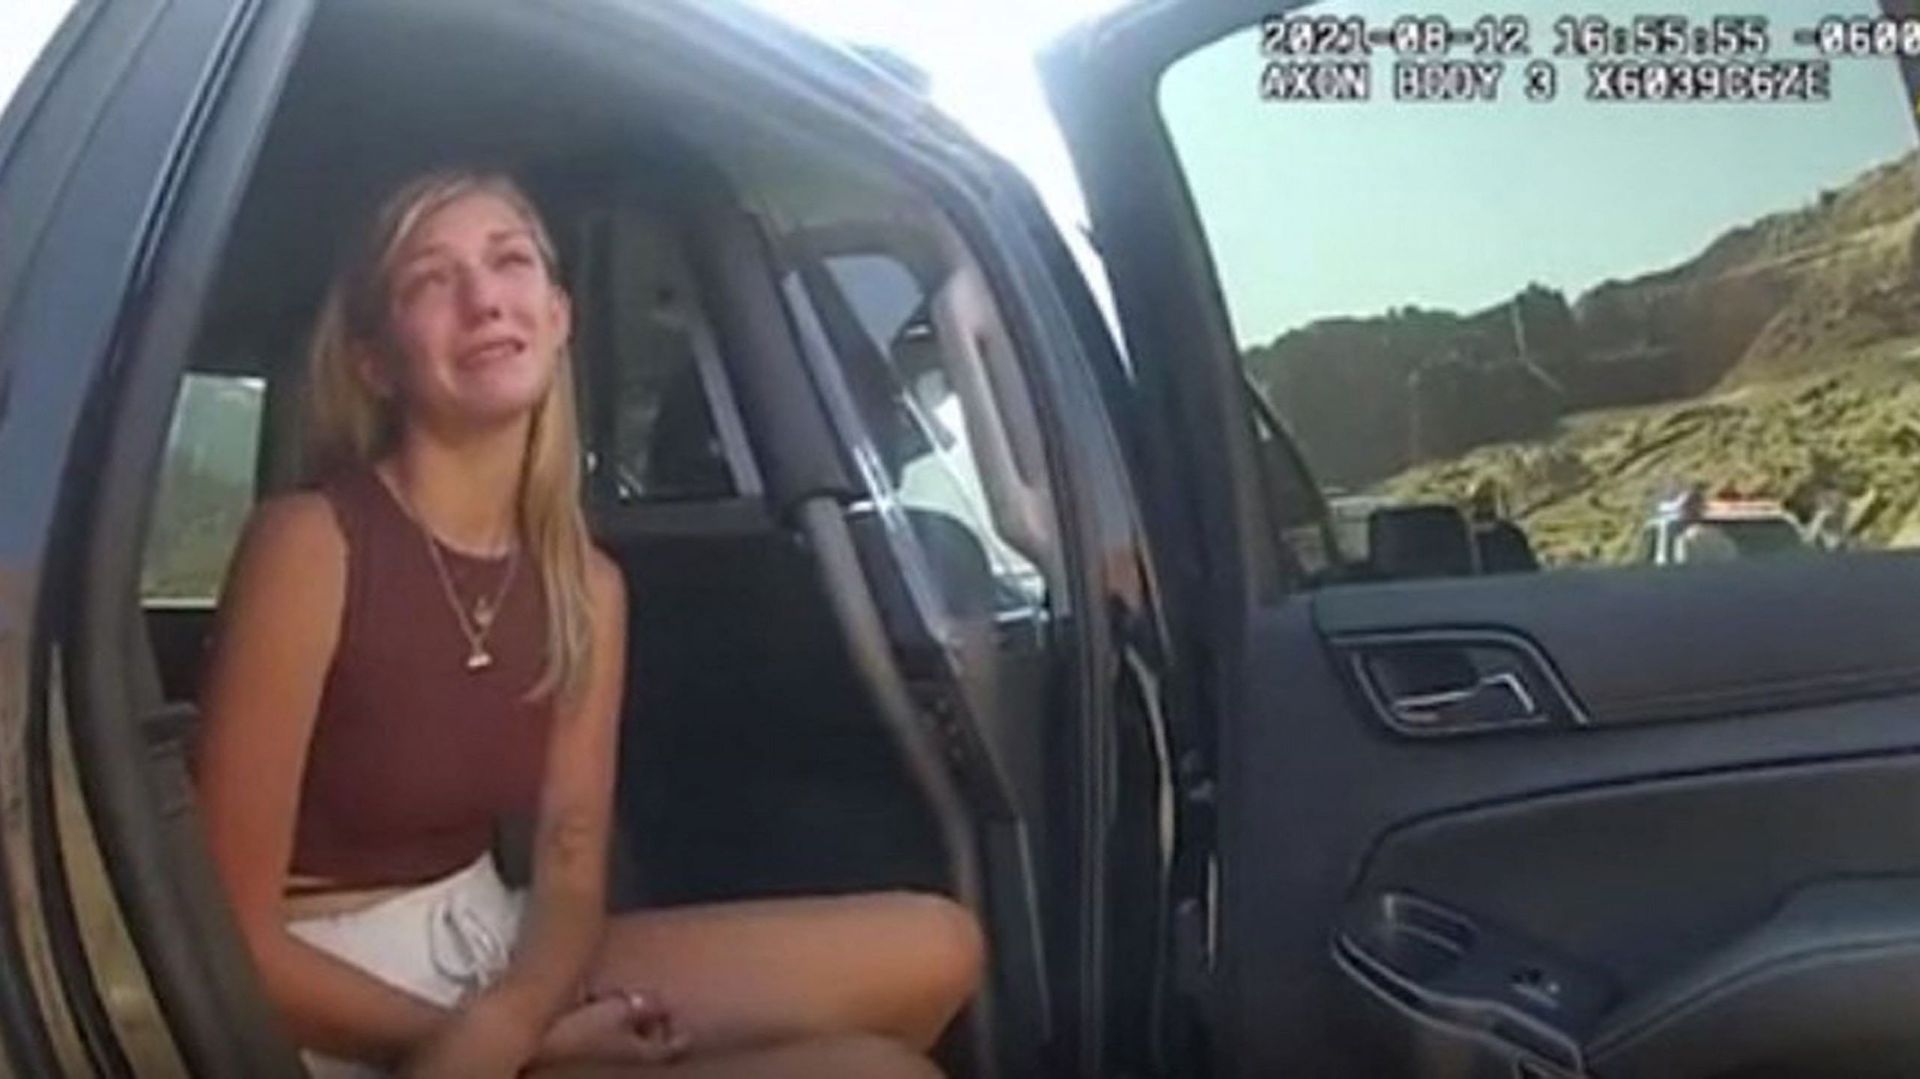 Gabrielle Petito apparaît en larmes dans une vidéo rendue publique par la police de Moab, petite ville de l'Utah.